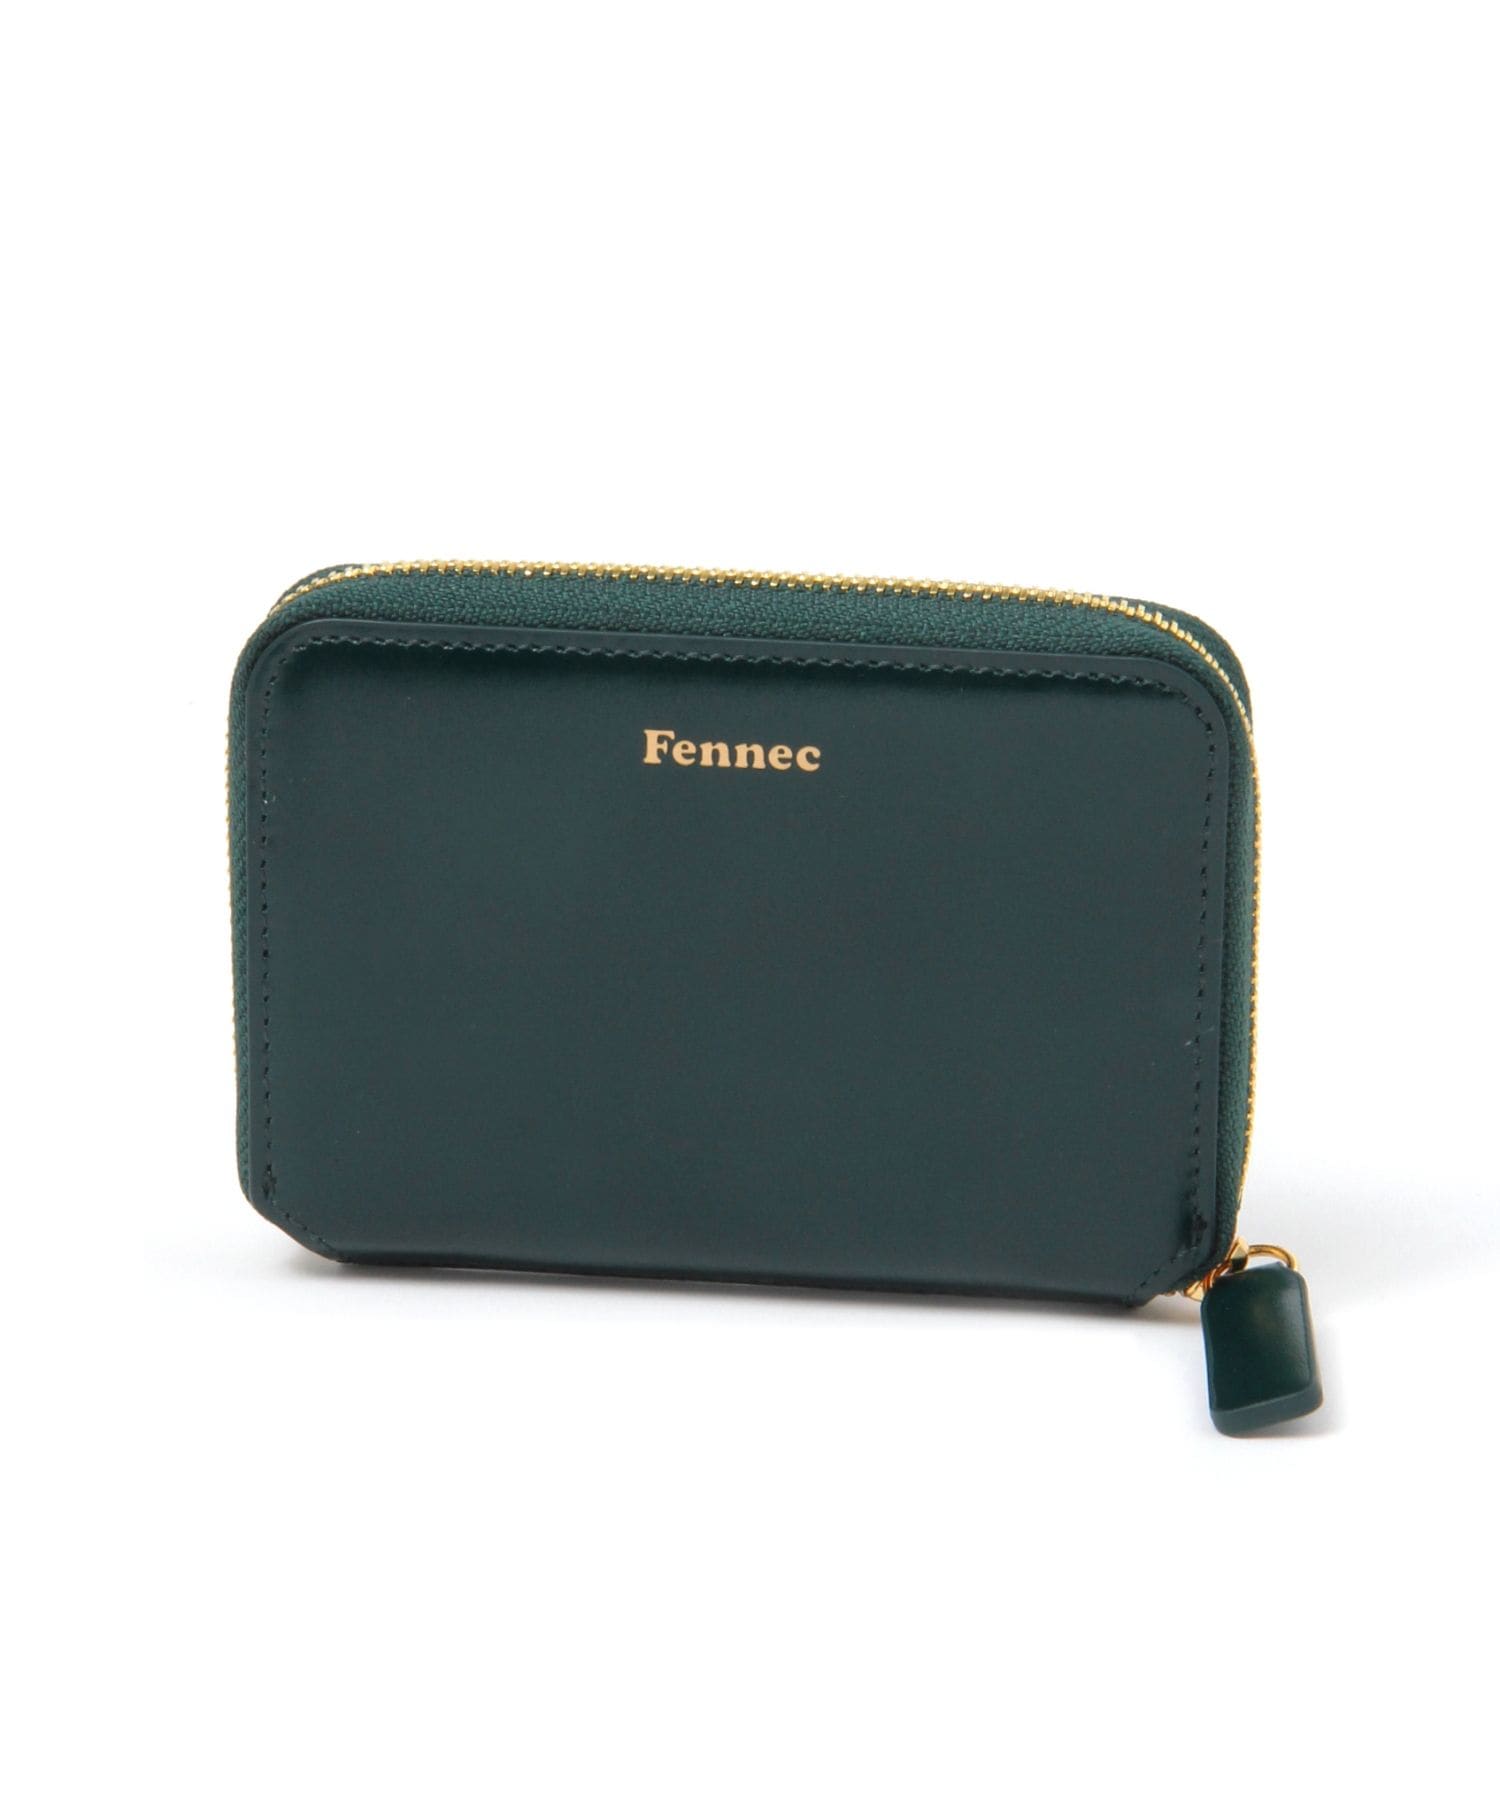 Fennec 財布 - 折り財布